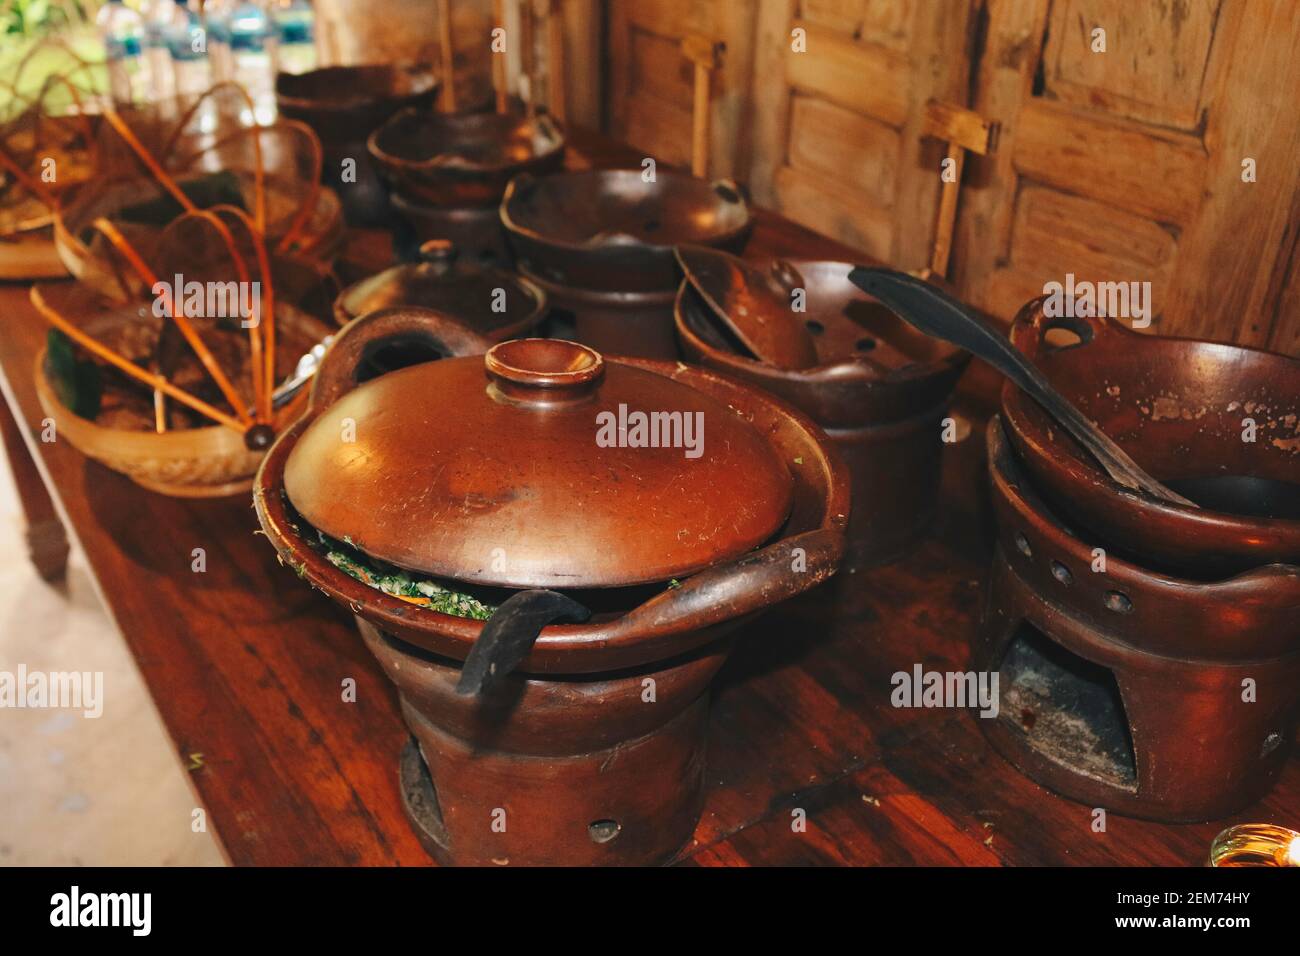 Steingutofen oder Tungku gerabah ist indonesischer lokaler Ofen aus Ton. Traditioneller Ofen aus Indonesien. Stockfoto